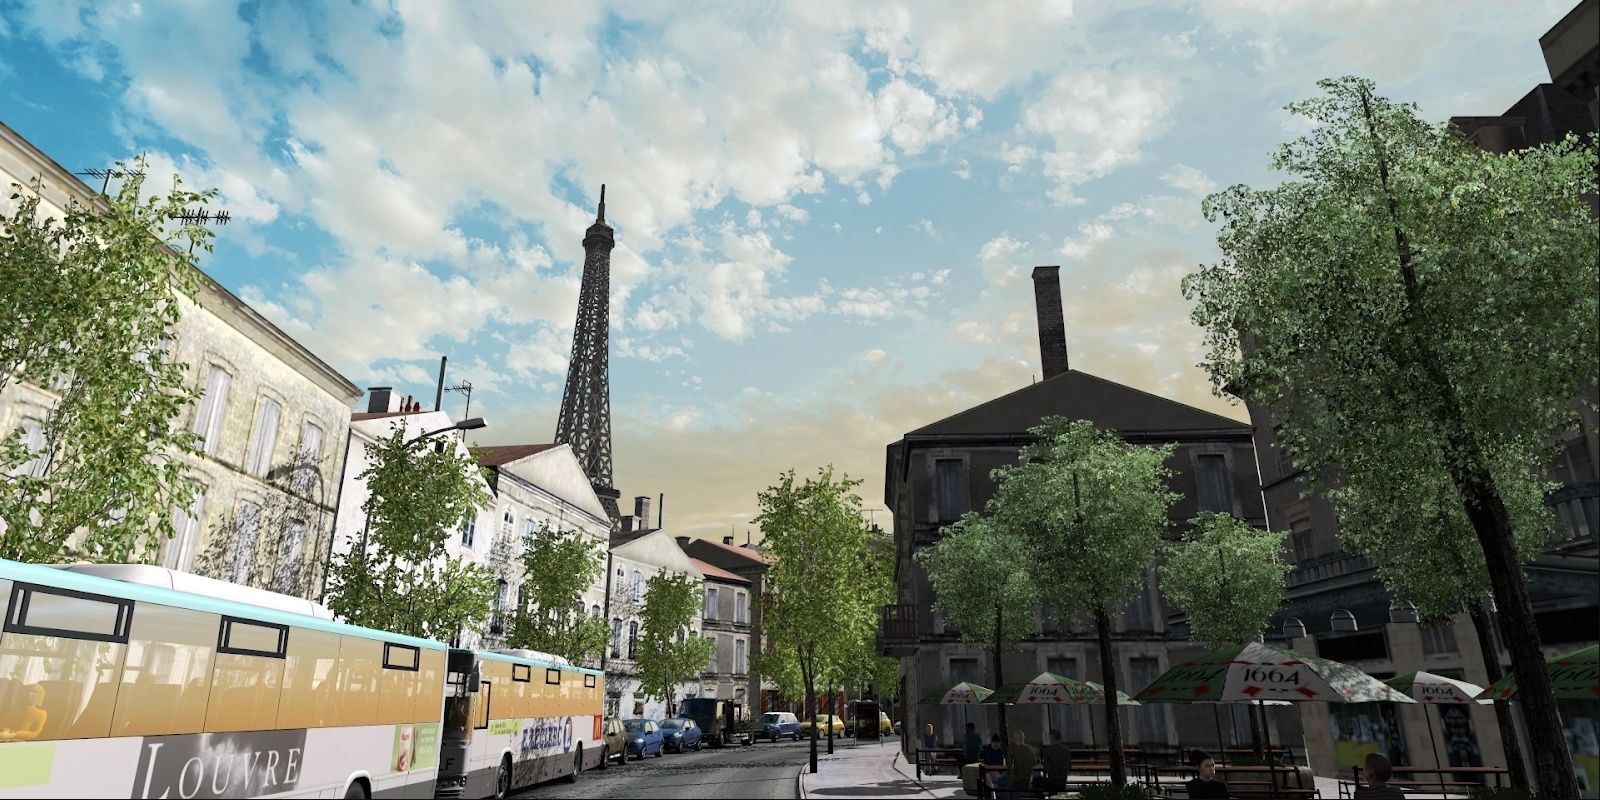 Paris Rebuild mod in Euro Truck Simulator 2